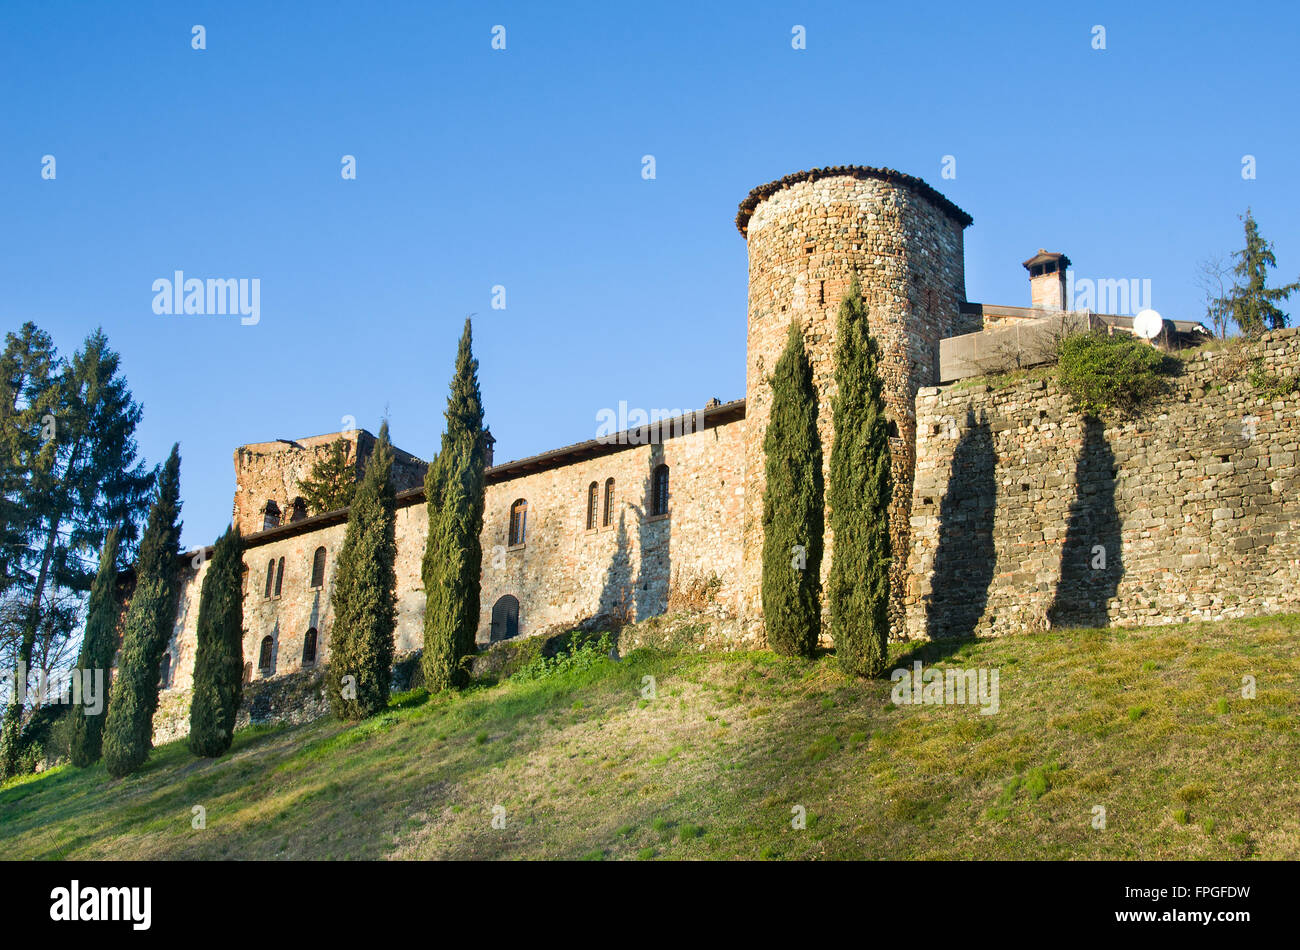 Remparts du château de Rivalta - Piacenza - Région Emilia Romagna, Italie Banque D'Images